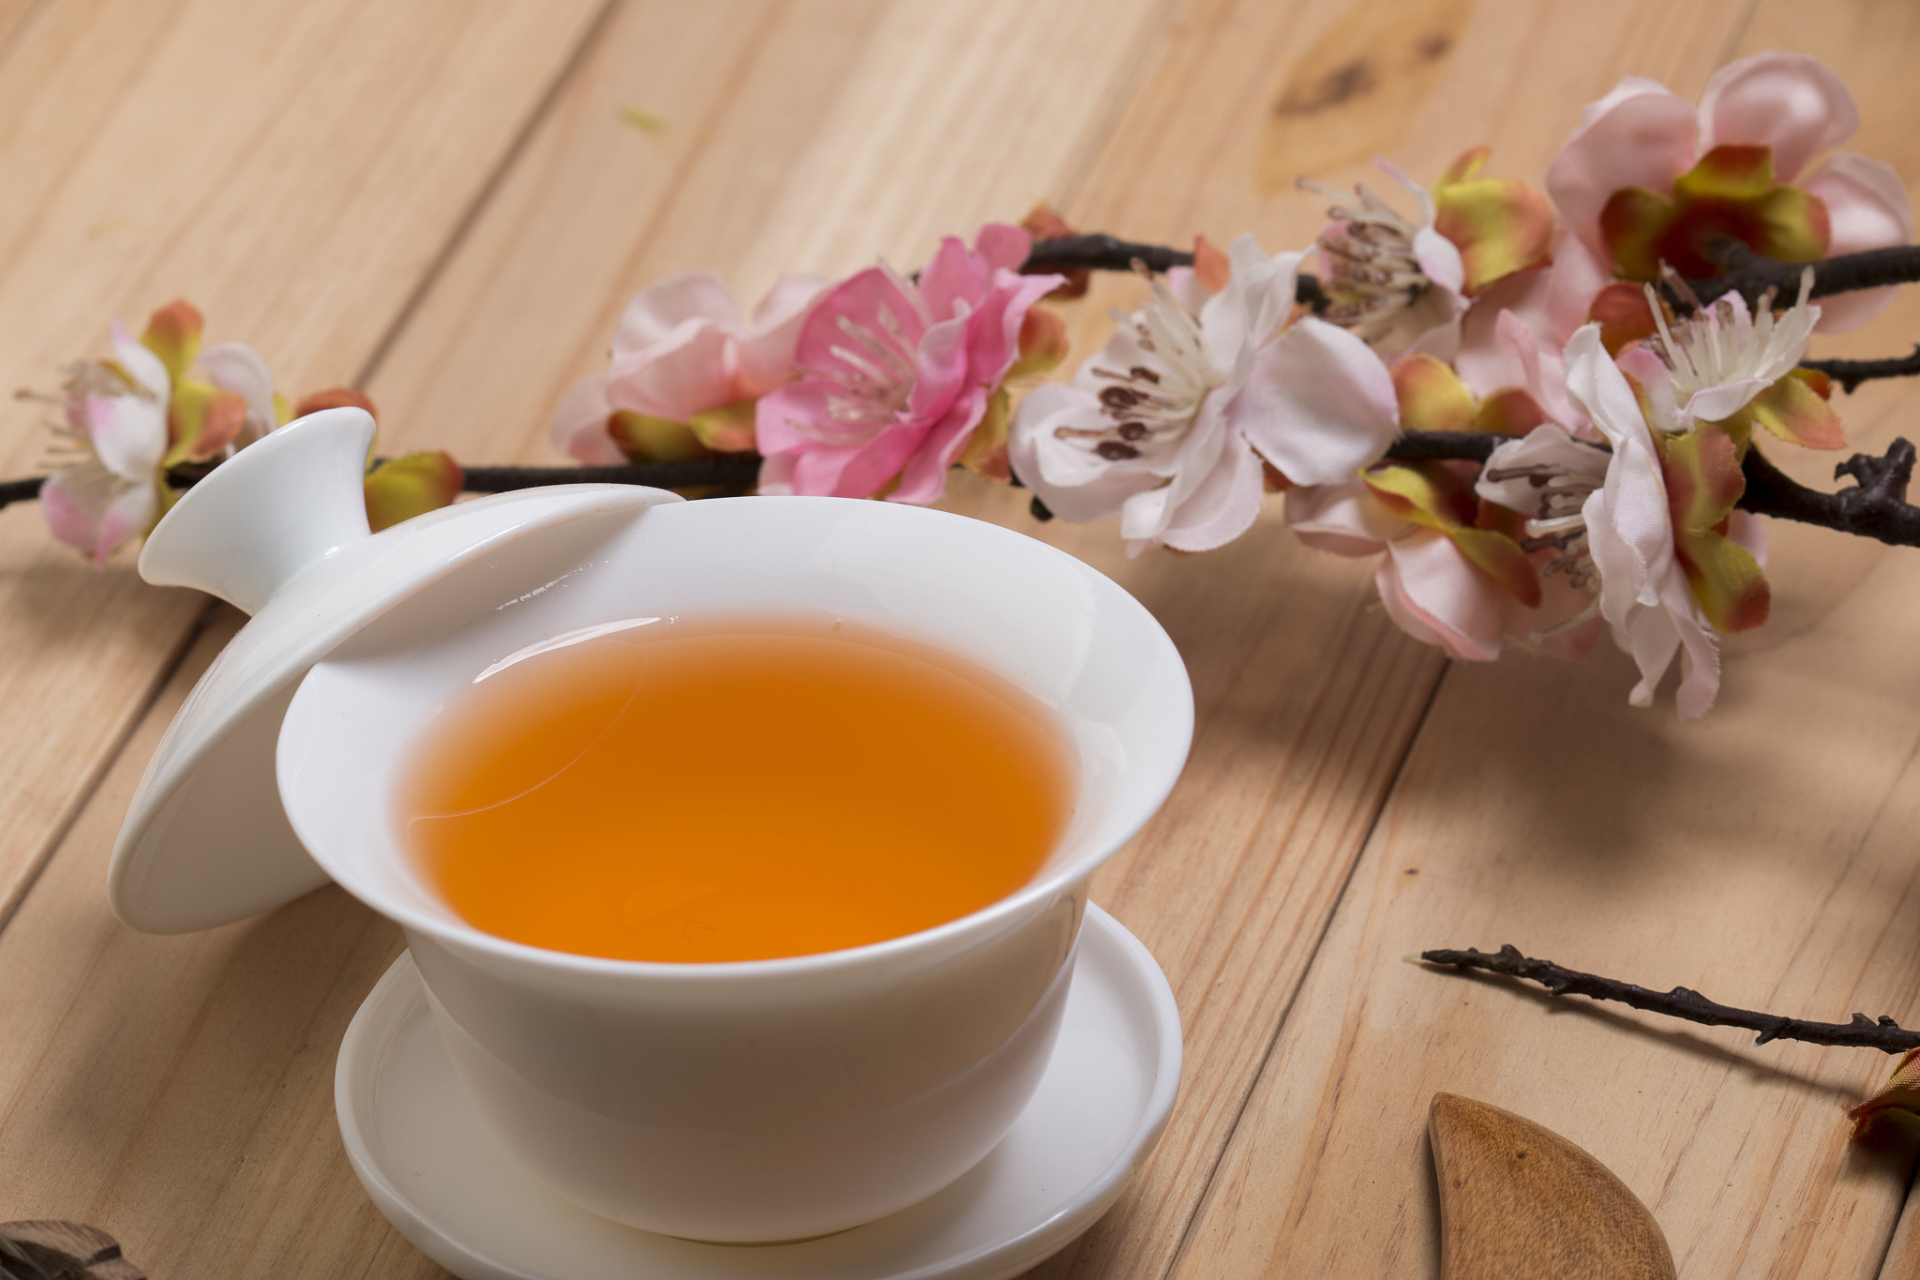 水因茶被重新塑造,颜色因而绚丽多彩;茶改变水的味道